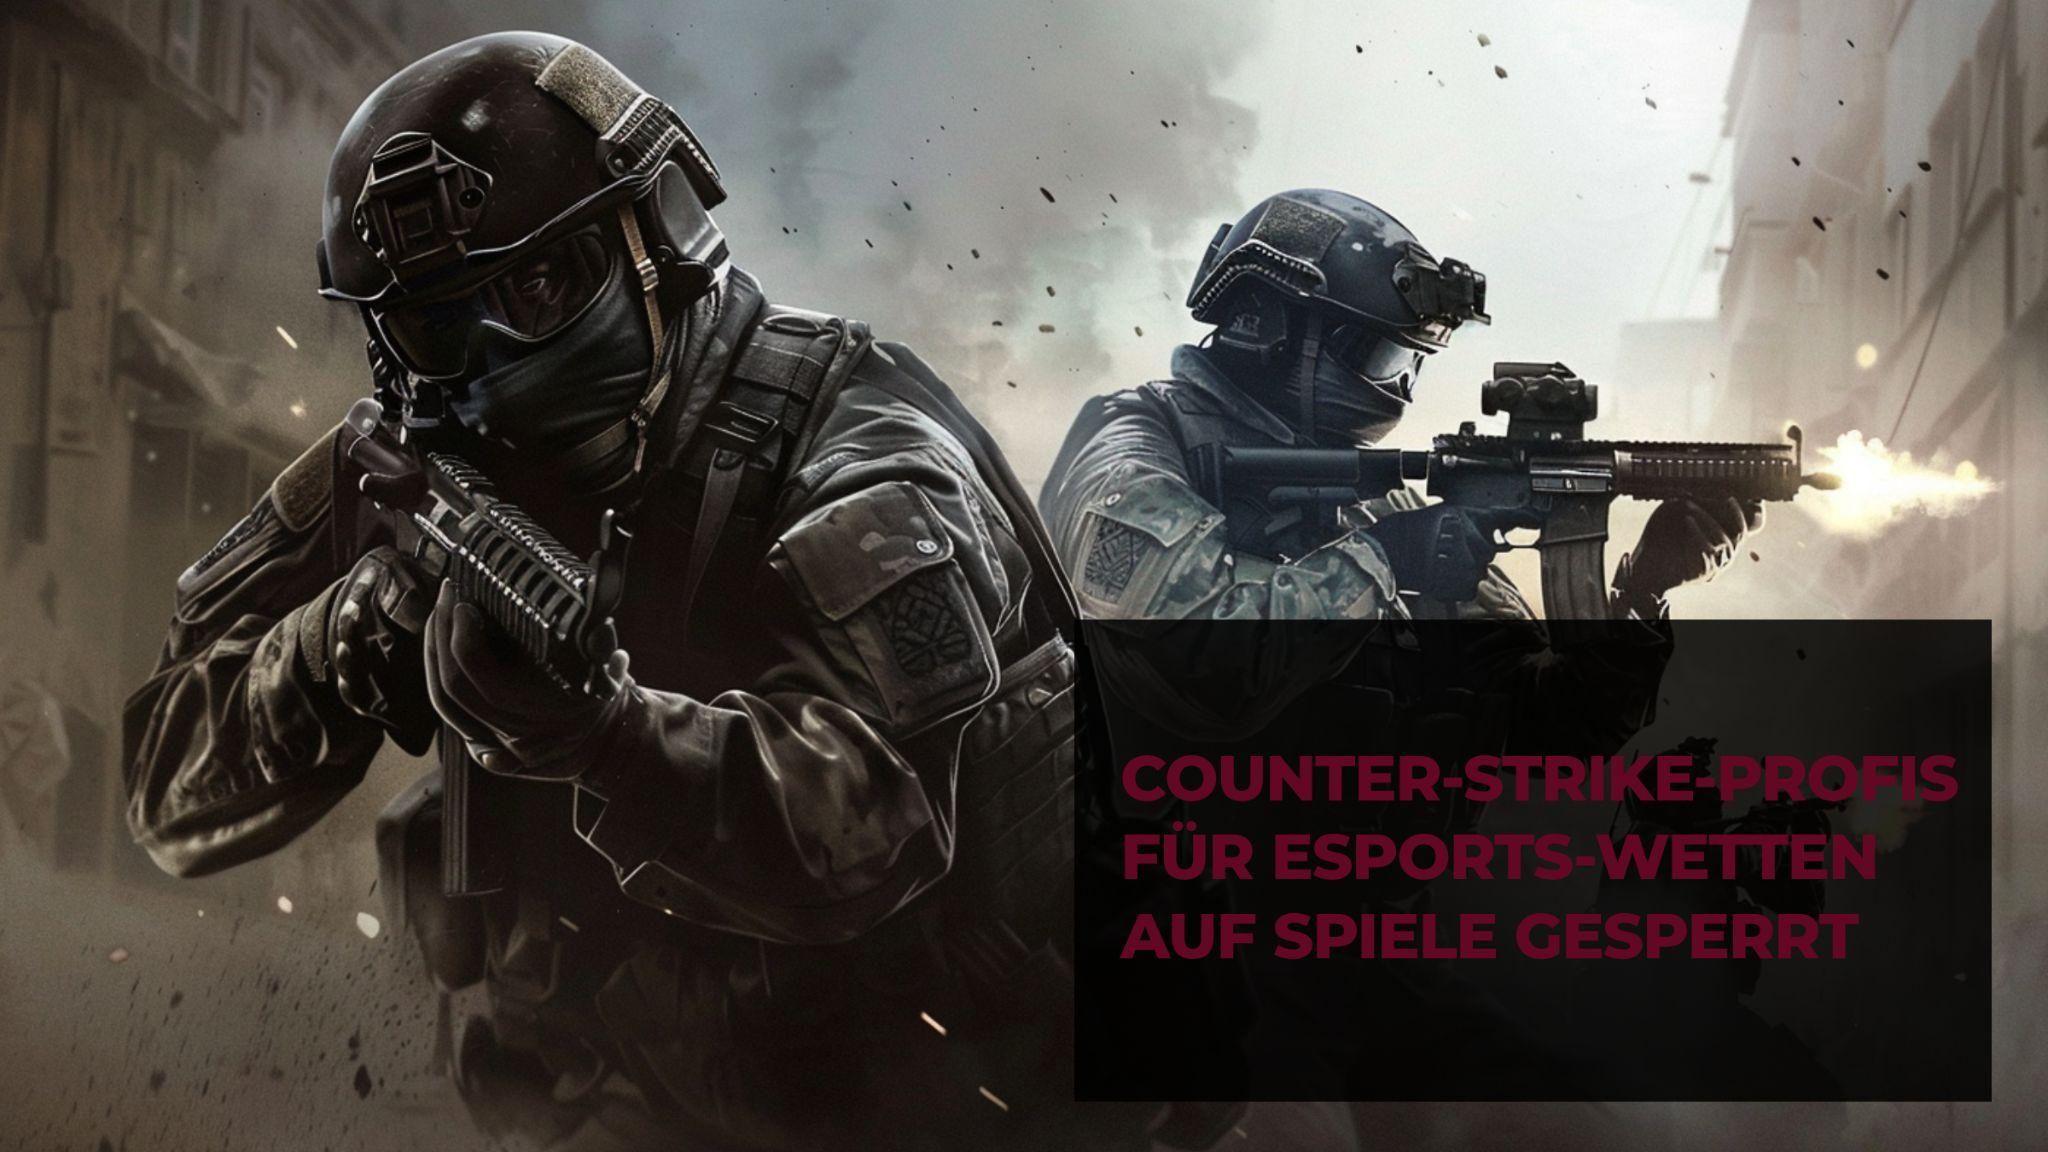 Profissionais de Counter-Strike proibidos de apostar em jogos de ESports